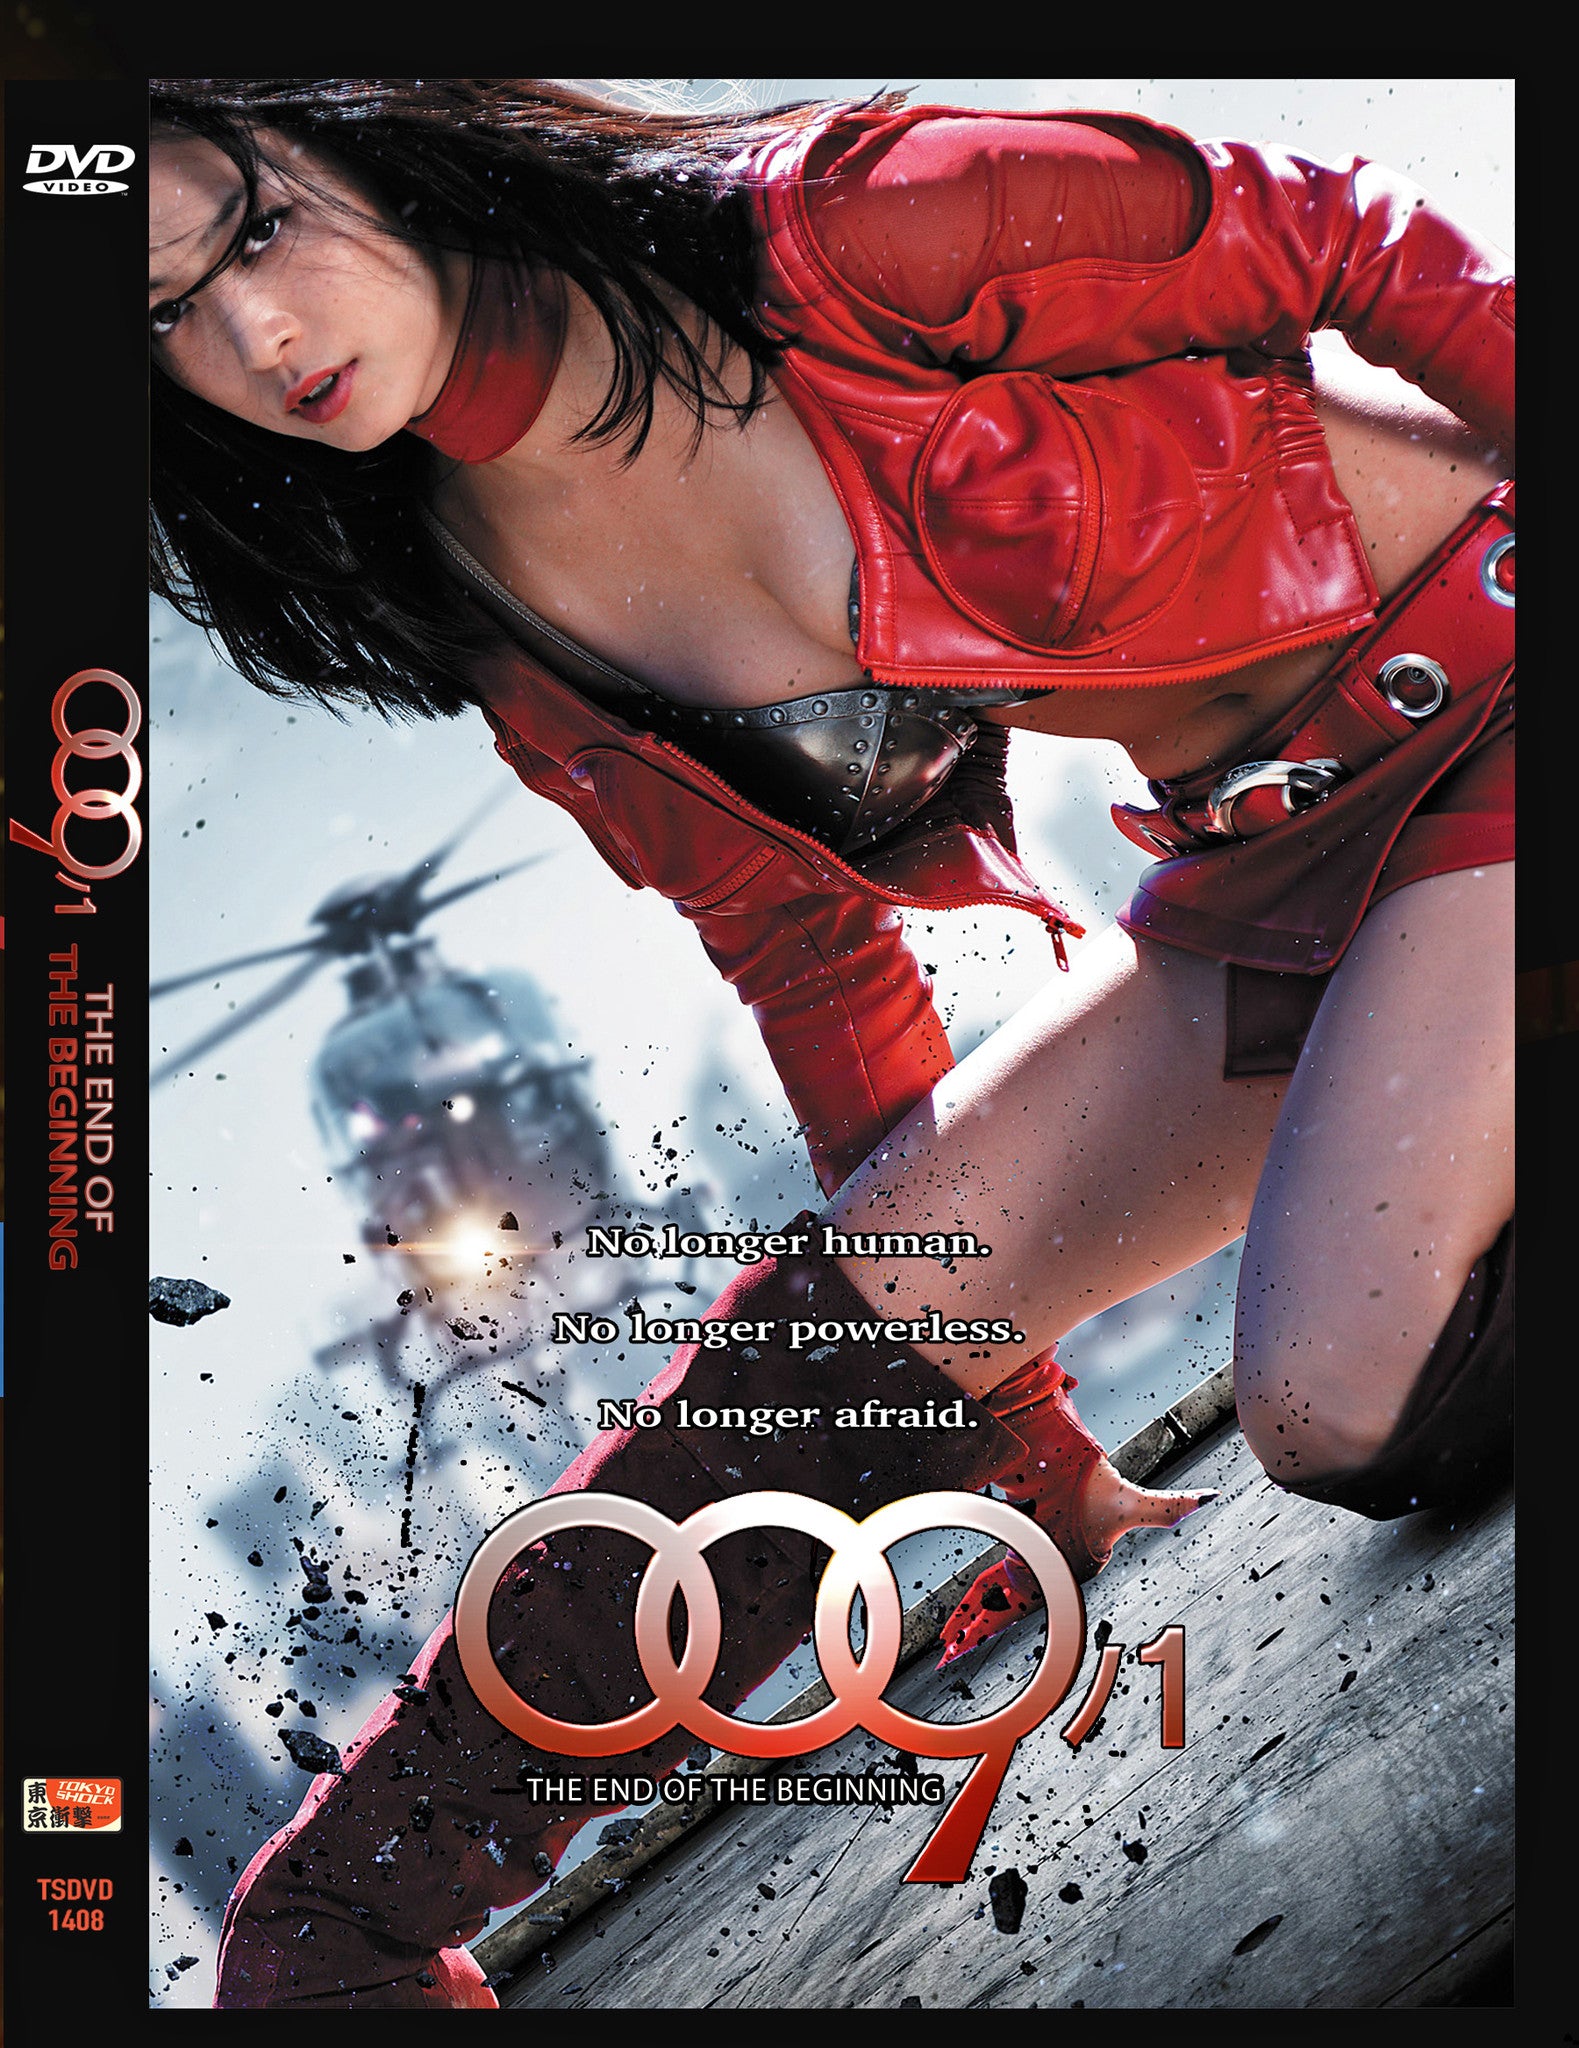 009 1 The End Of The Beginning Tokyo Shock Dvd Oasis Media Blasters Oop